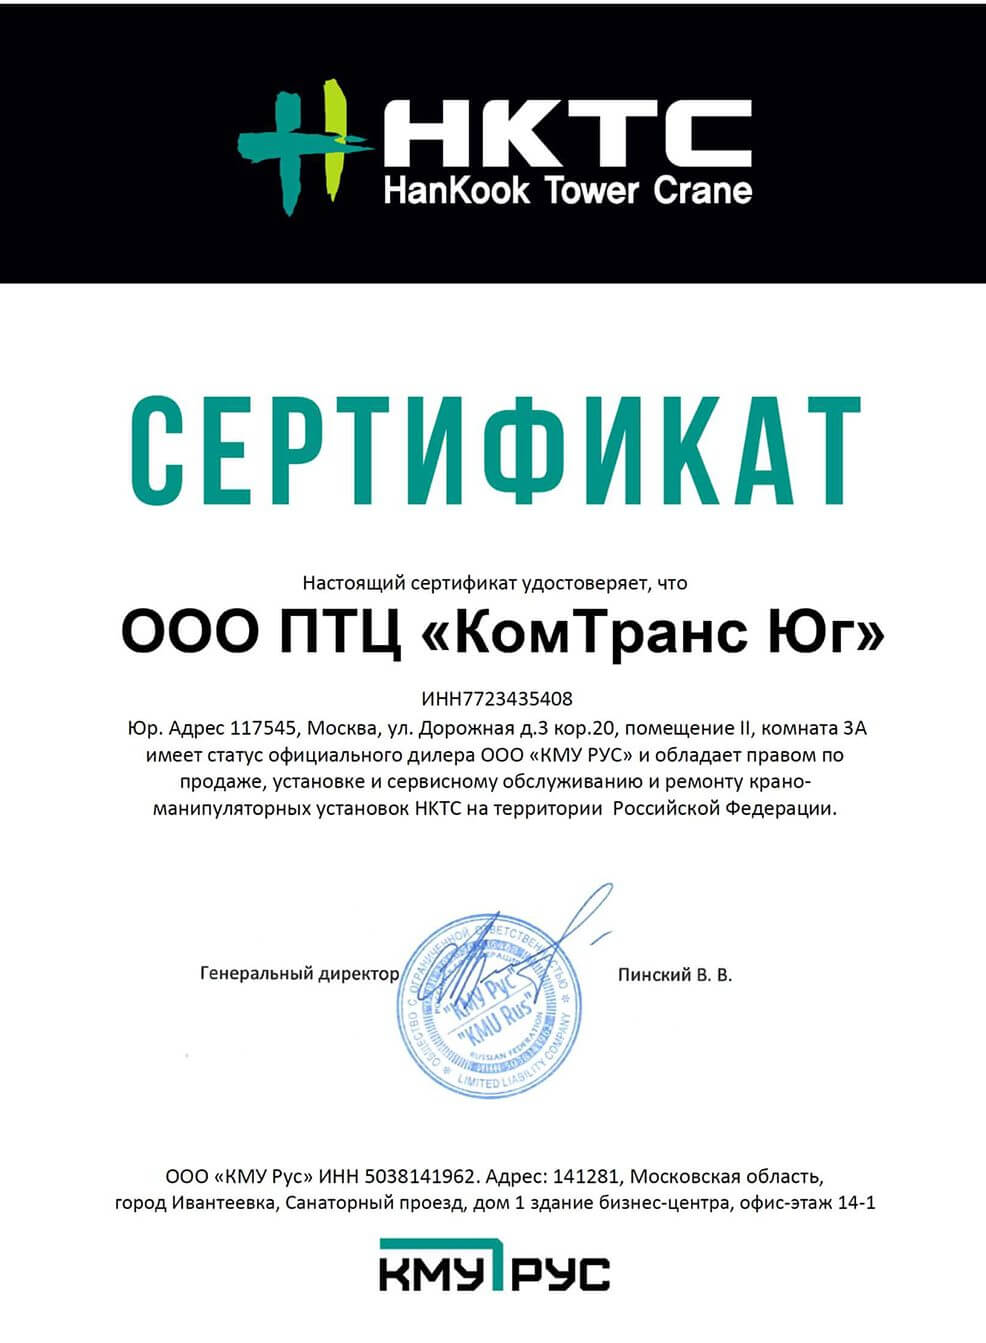 Сертификат официального дилера по продаже, установке, сервисному обслуживанию и ремонту крано-манипуляторных установок HKTC